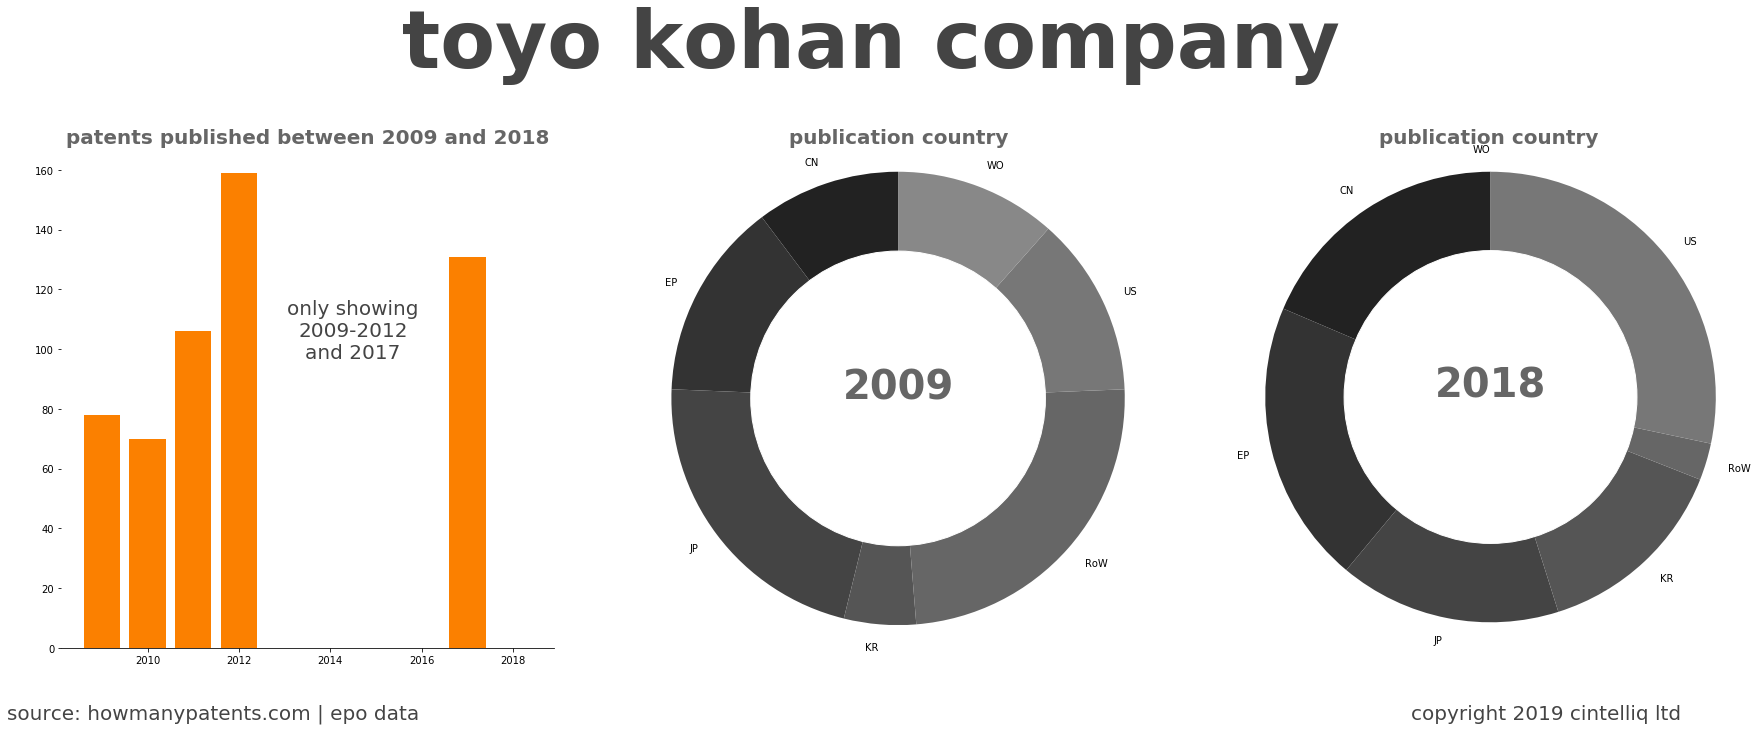 summary of patents for Toyo Kohan Company